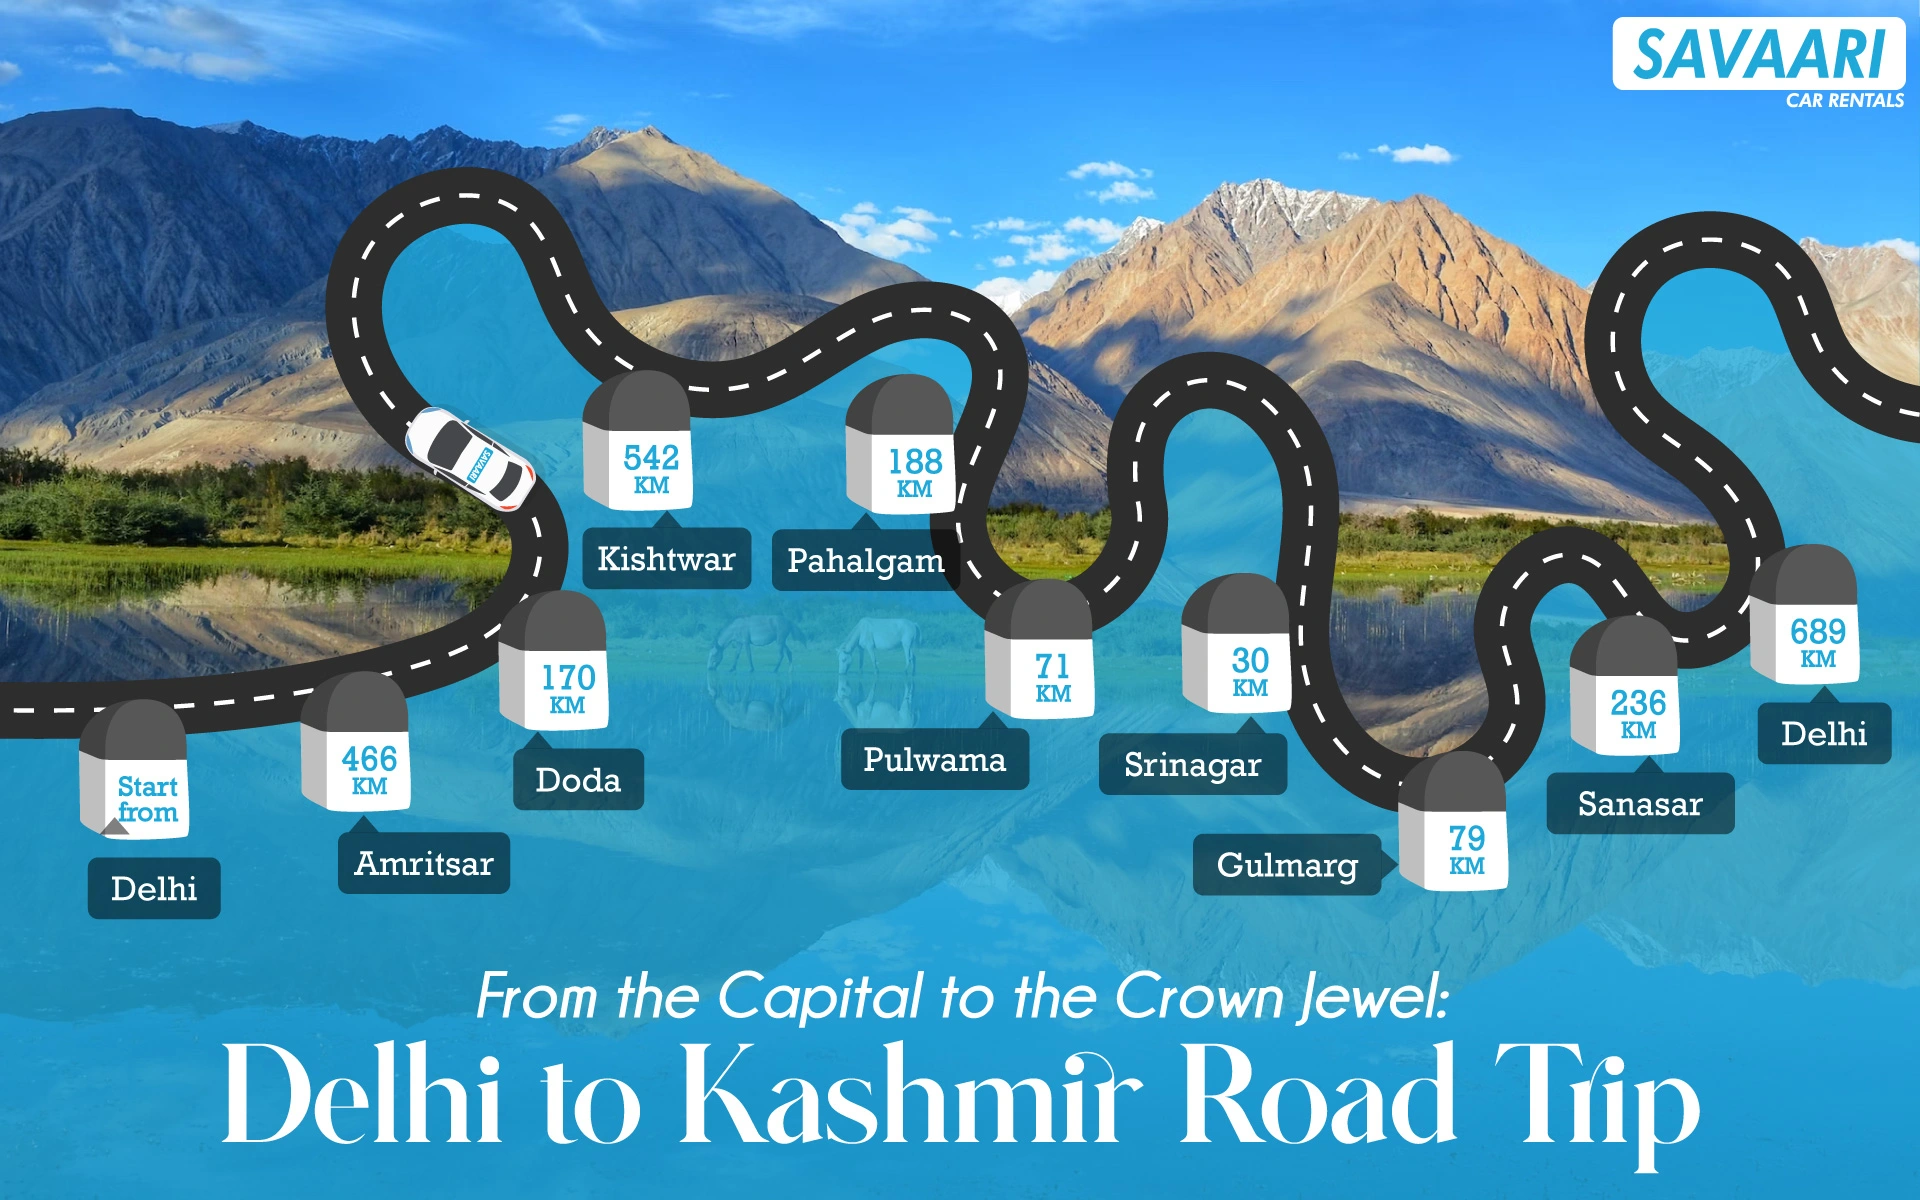 Kashmir road trip itinerary